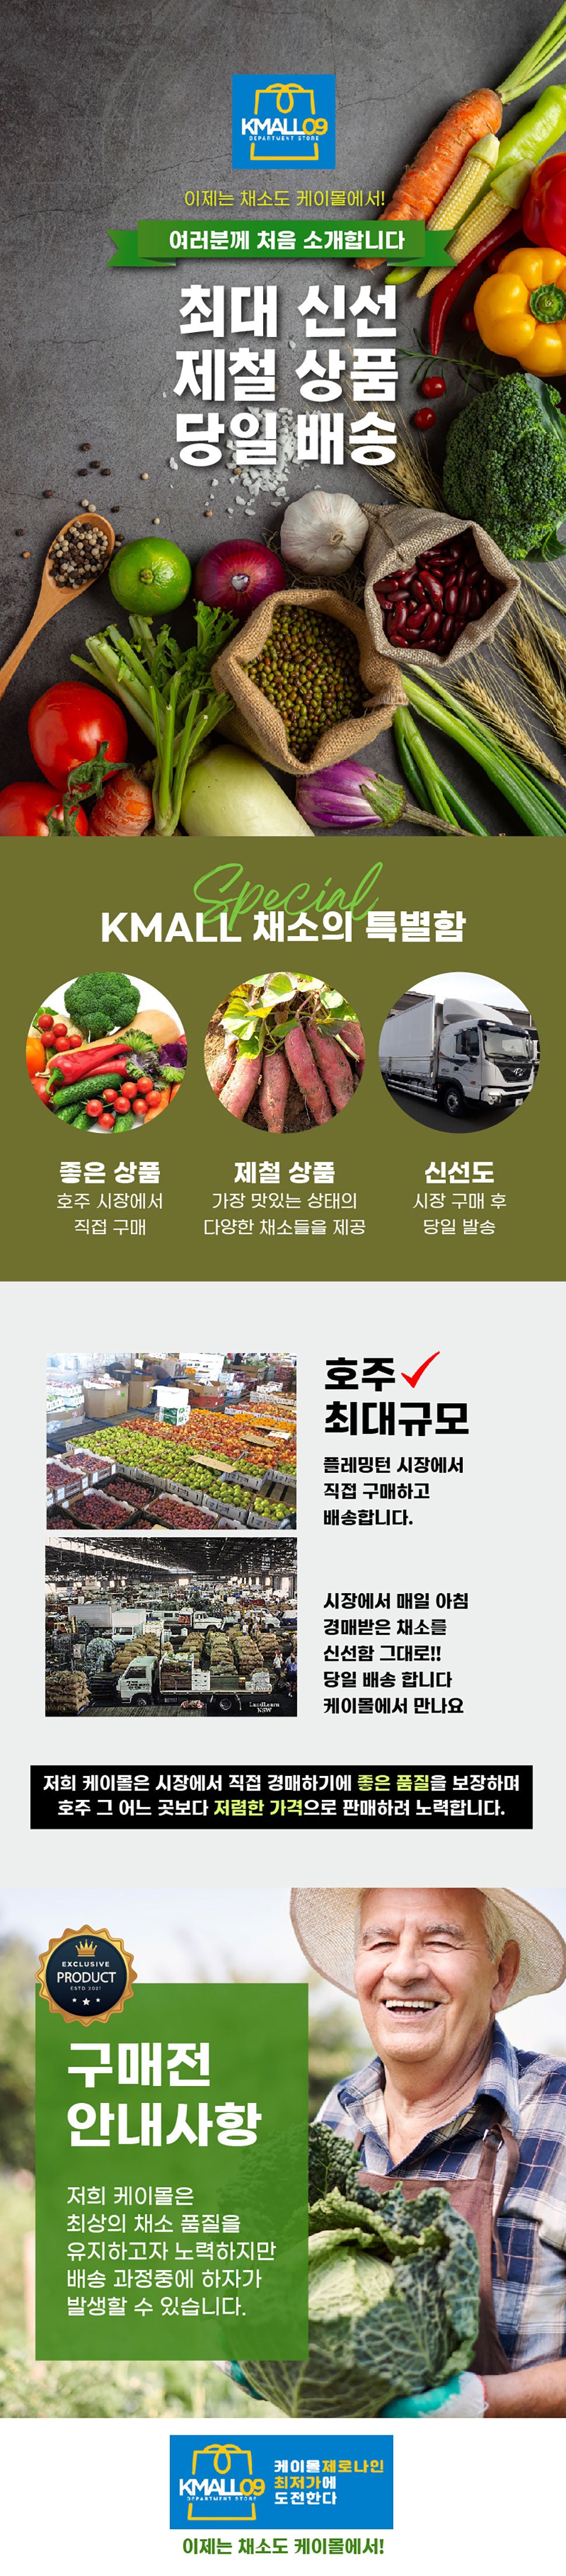 케이몰 09 공구 중독 한인 호주 온라인 쇼핑 몰 한국 상품 제품 야채 채소 베지테리언 오픈